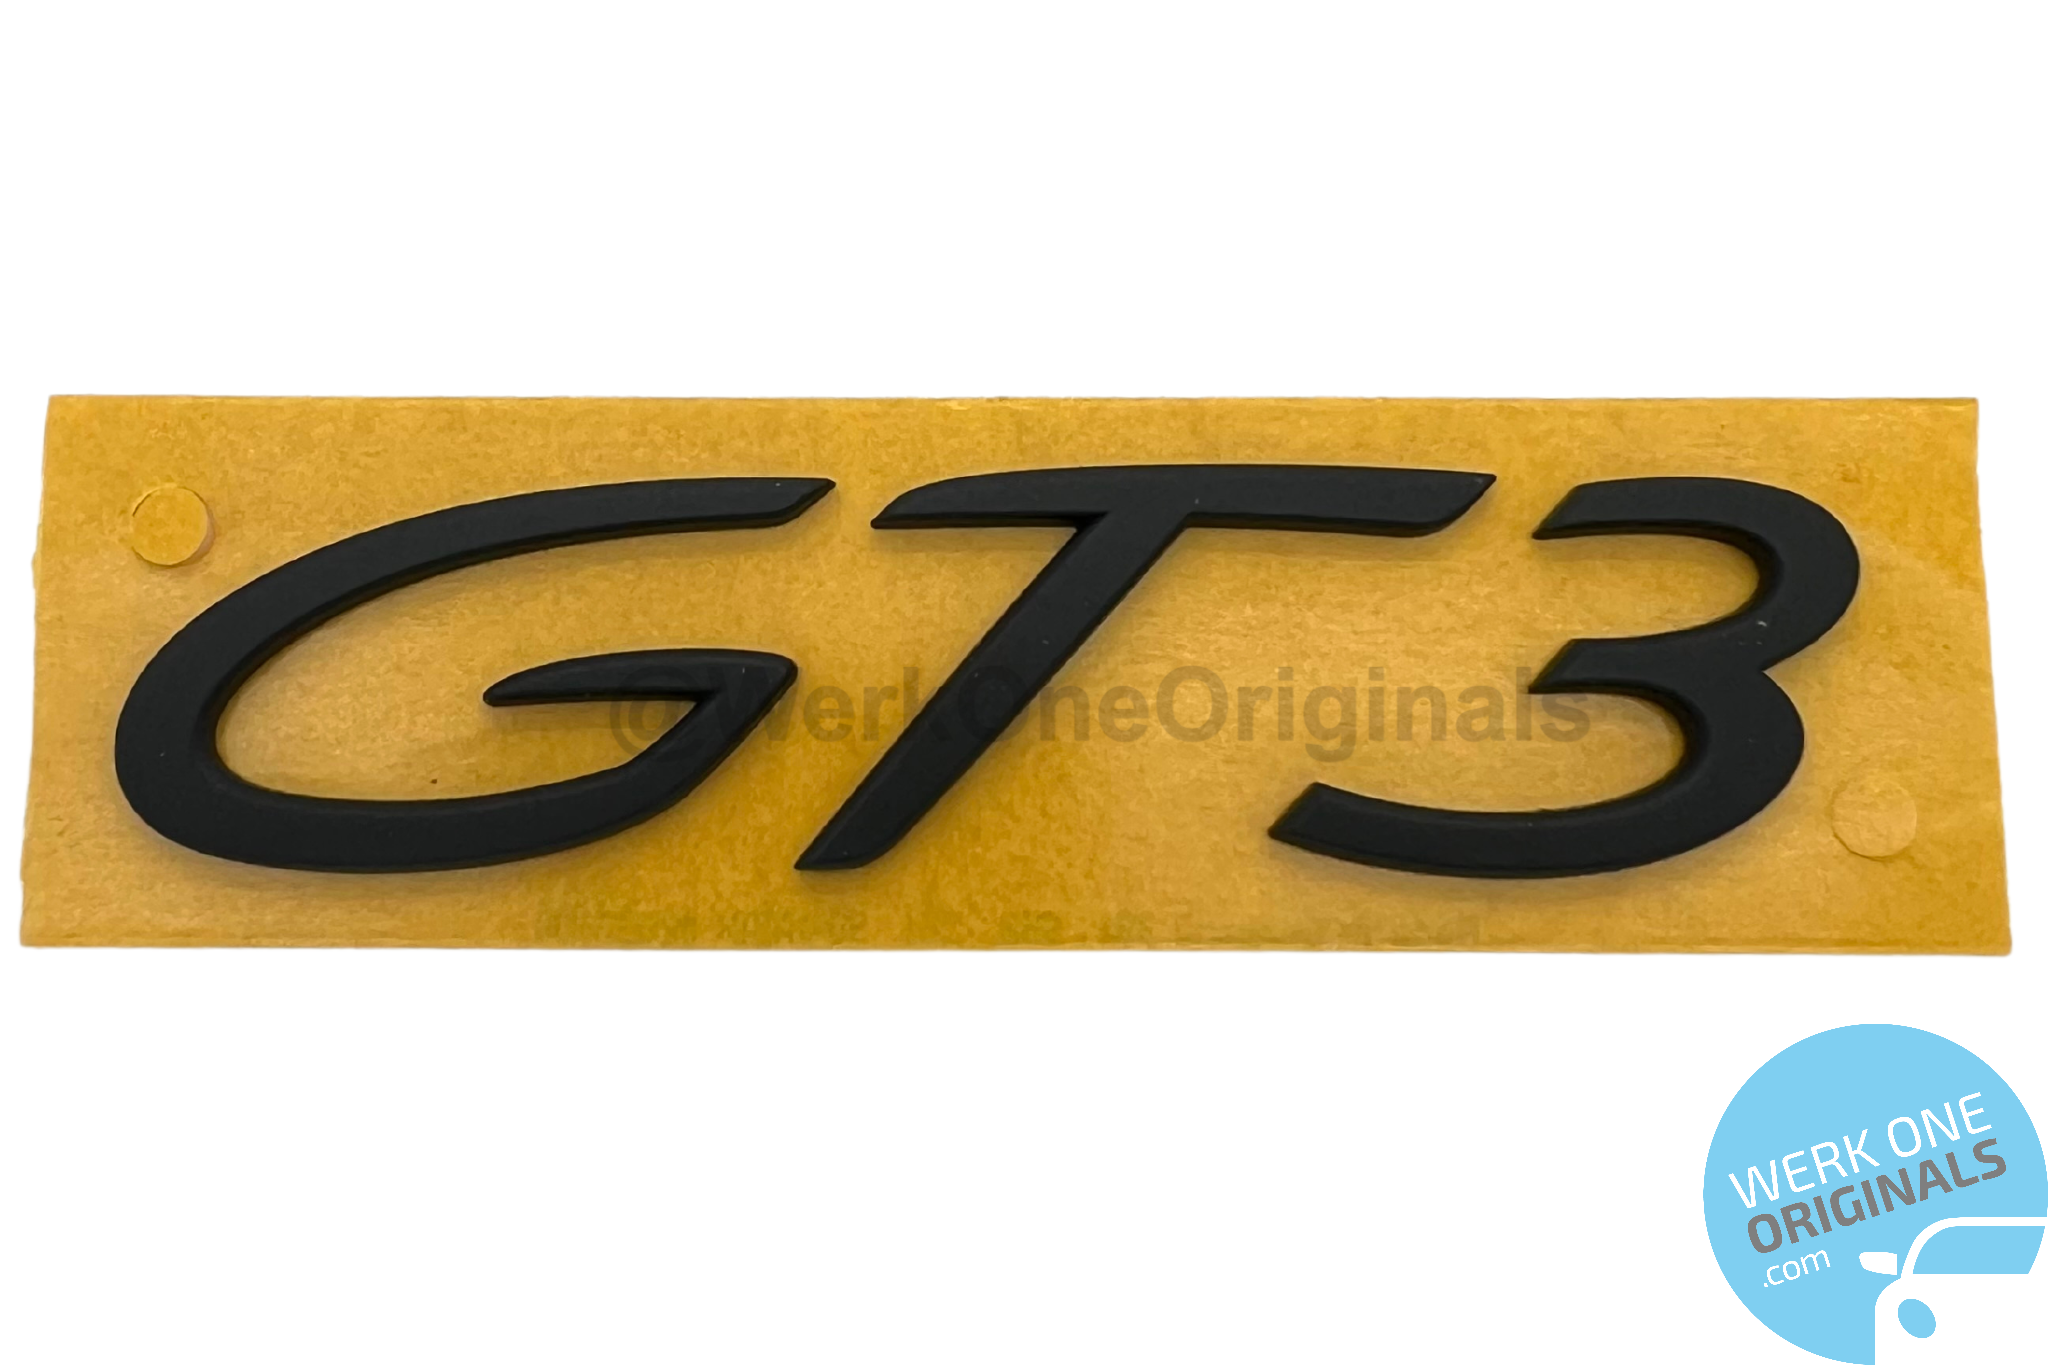 Porsche Official 'Porsche GT3' Rear Badge Decal in Matte Black for 911 Type 991 GT3 Models